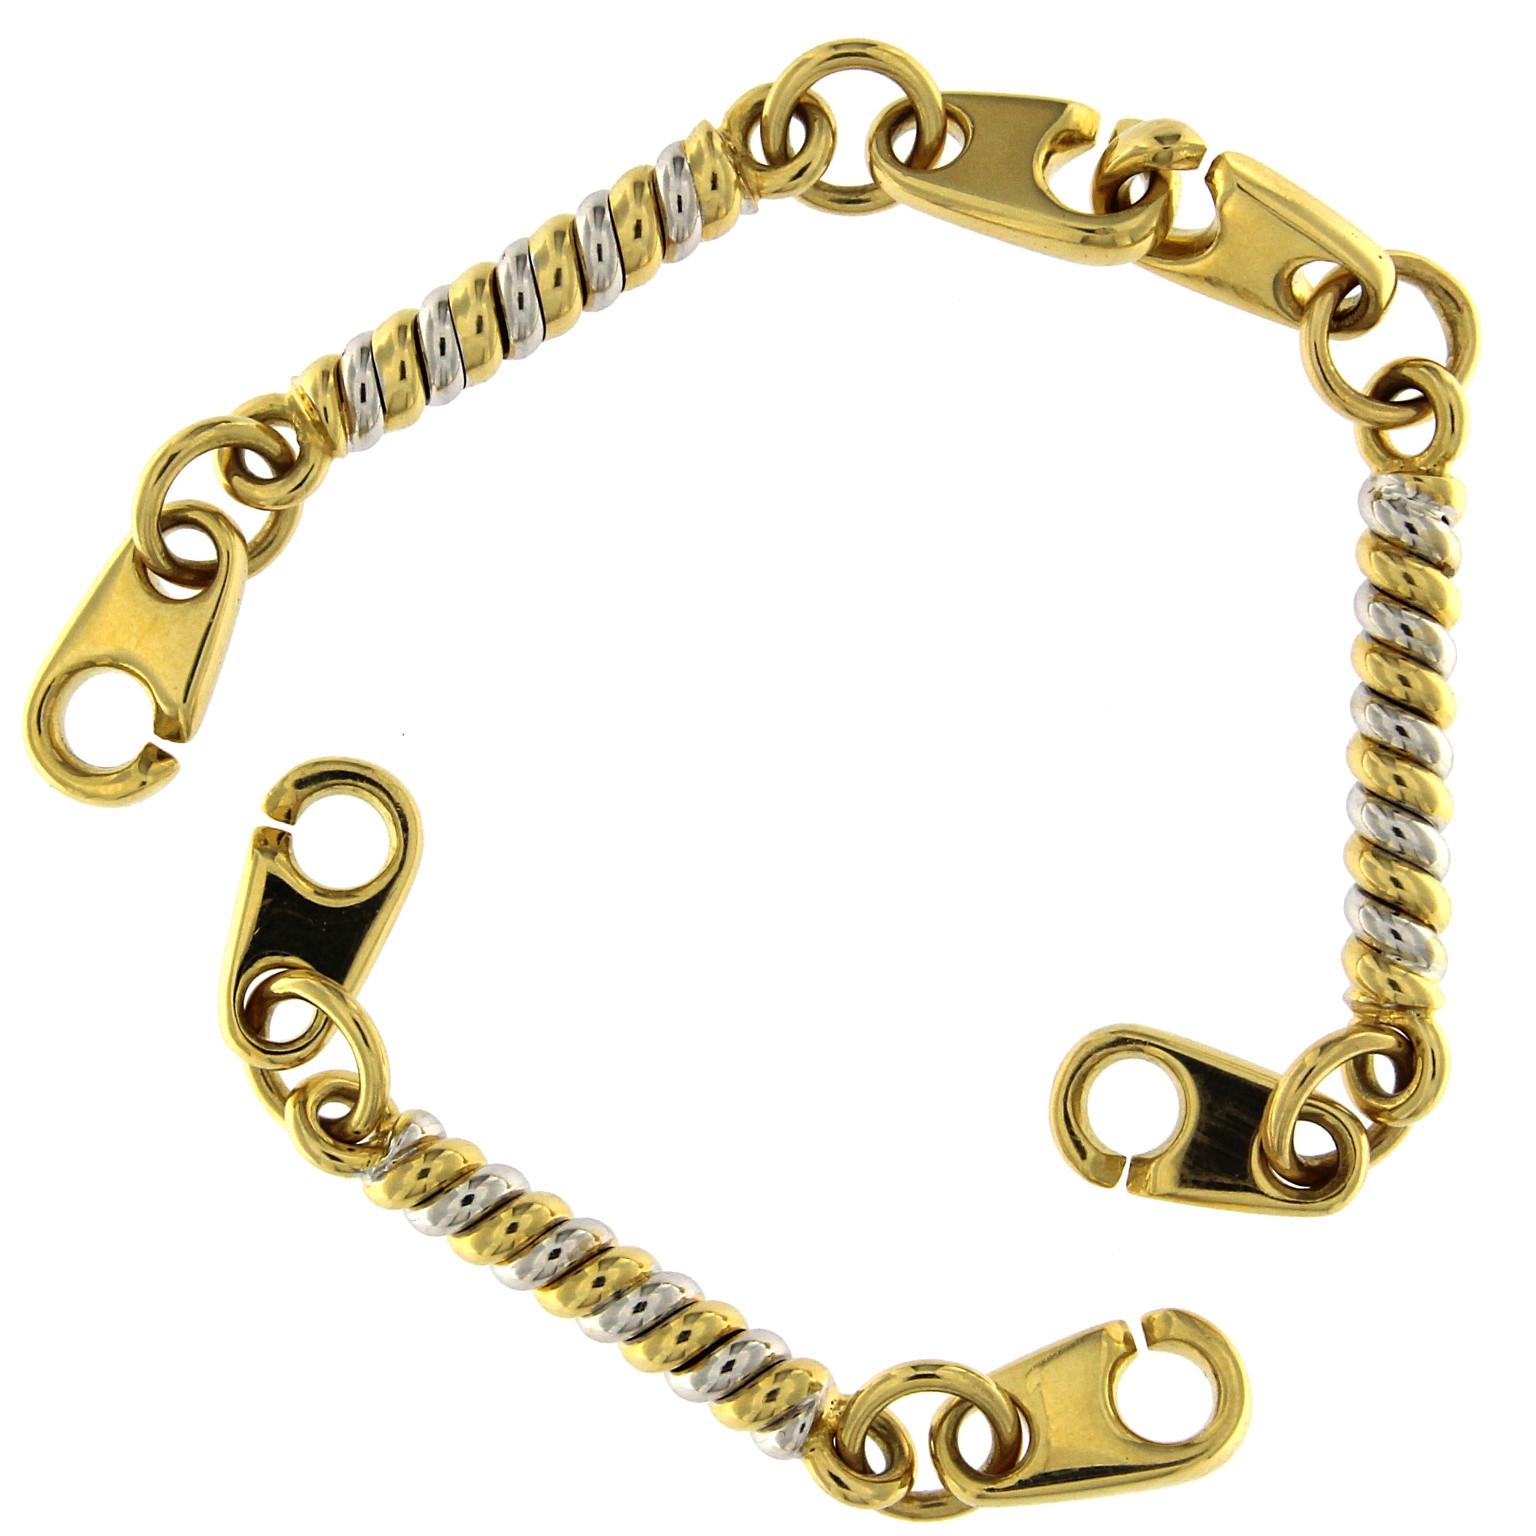 Bracelet en chaîne de conception inhabituelle et de grand effet visuel en or jaune avec des maillons à éléments torsadés blancs et jaunes.
Poids total de  or 18 kt gr 28.00
Timbre 750

